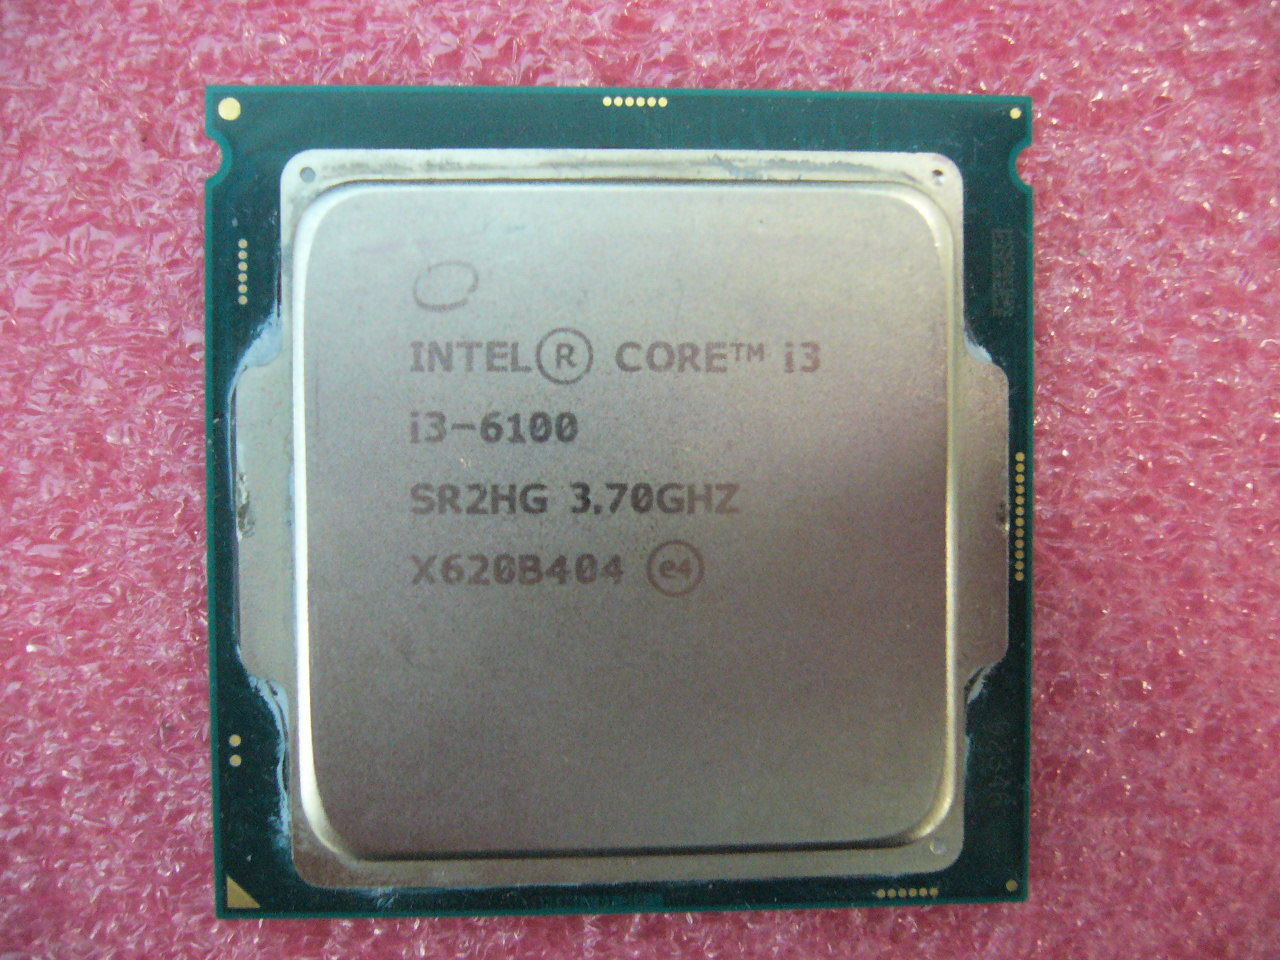 QTY 1x Intel CPU i3-6100 Dual-Cores 3.70Ghz 3MB LGA1151 SR2HG NOT WORKING